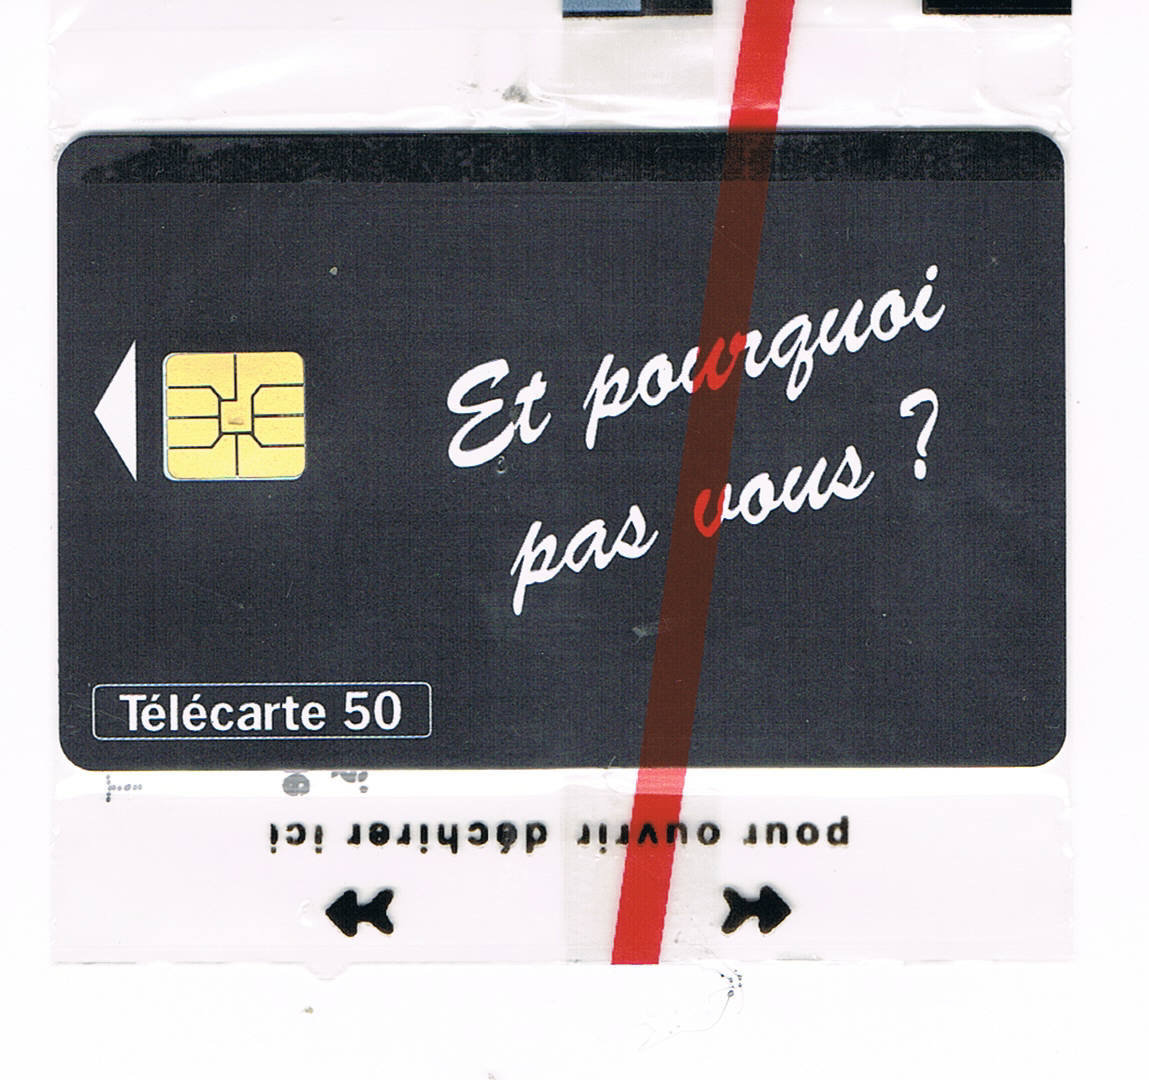 Avions  Télécartes  thématique privée édition limitée LOT 2  2 Euros la carte. 